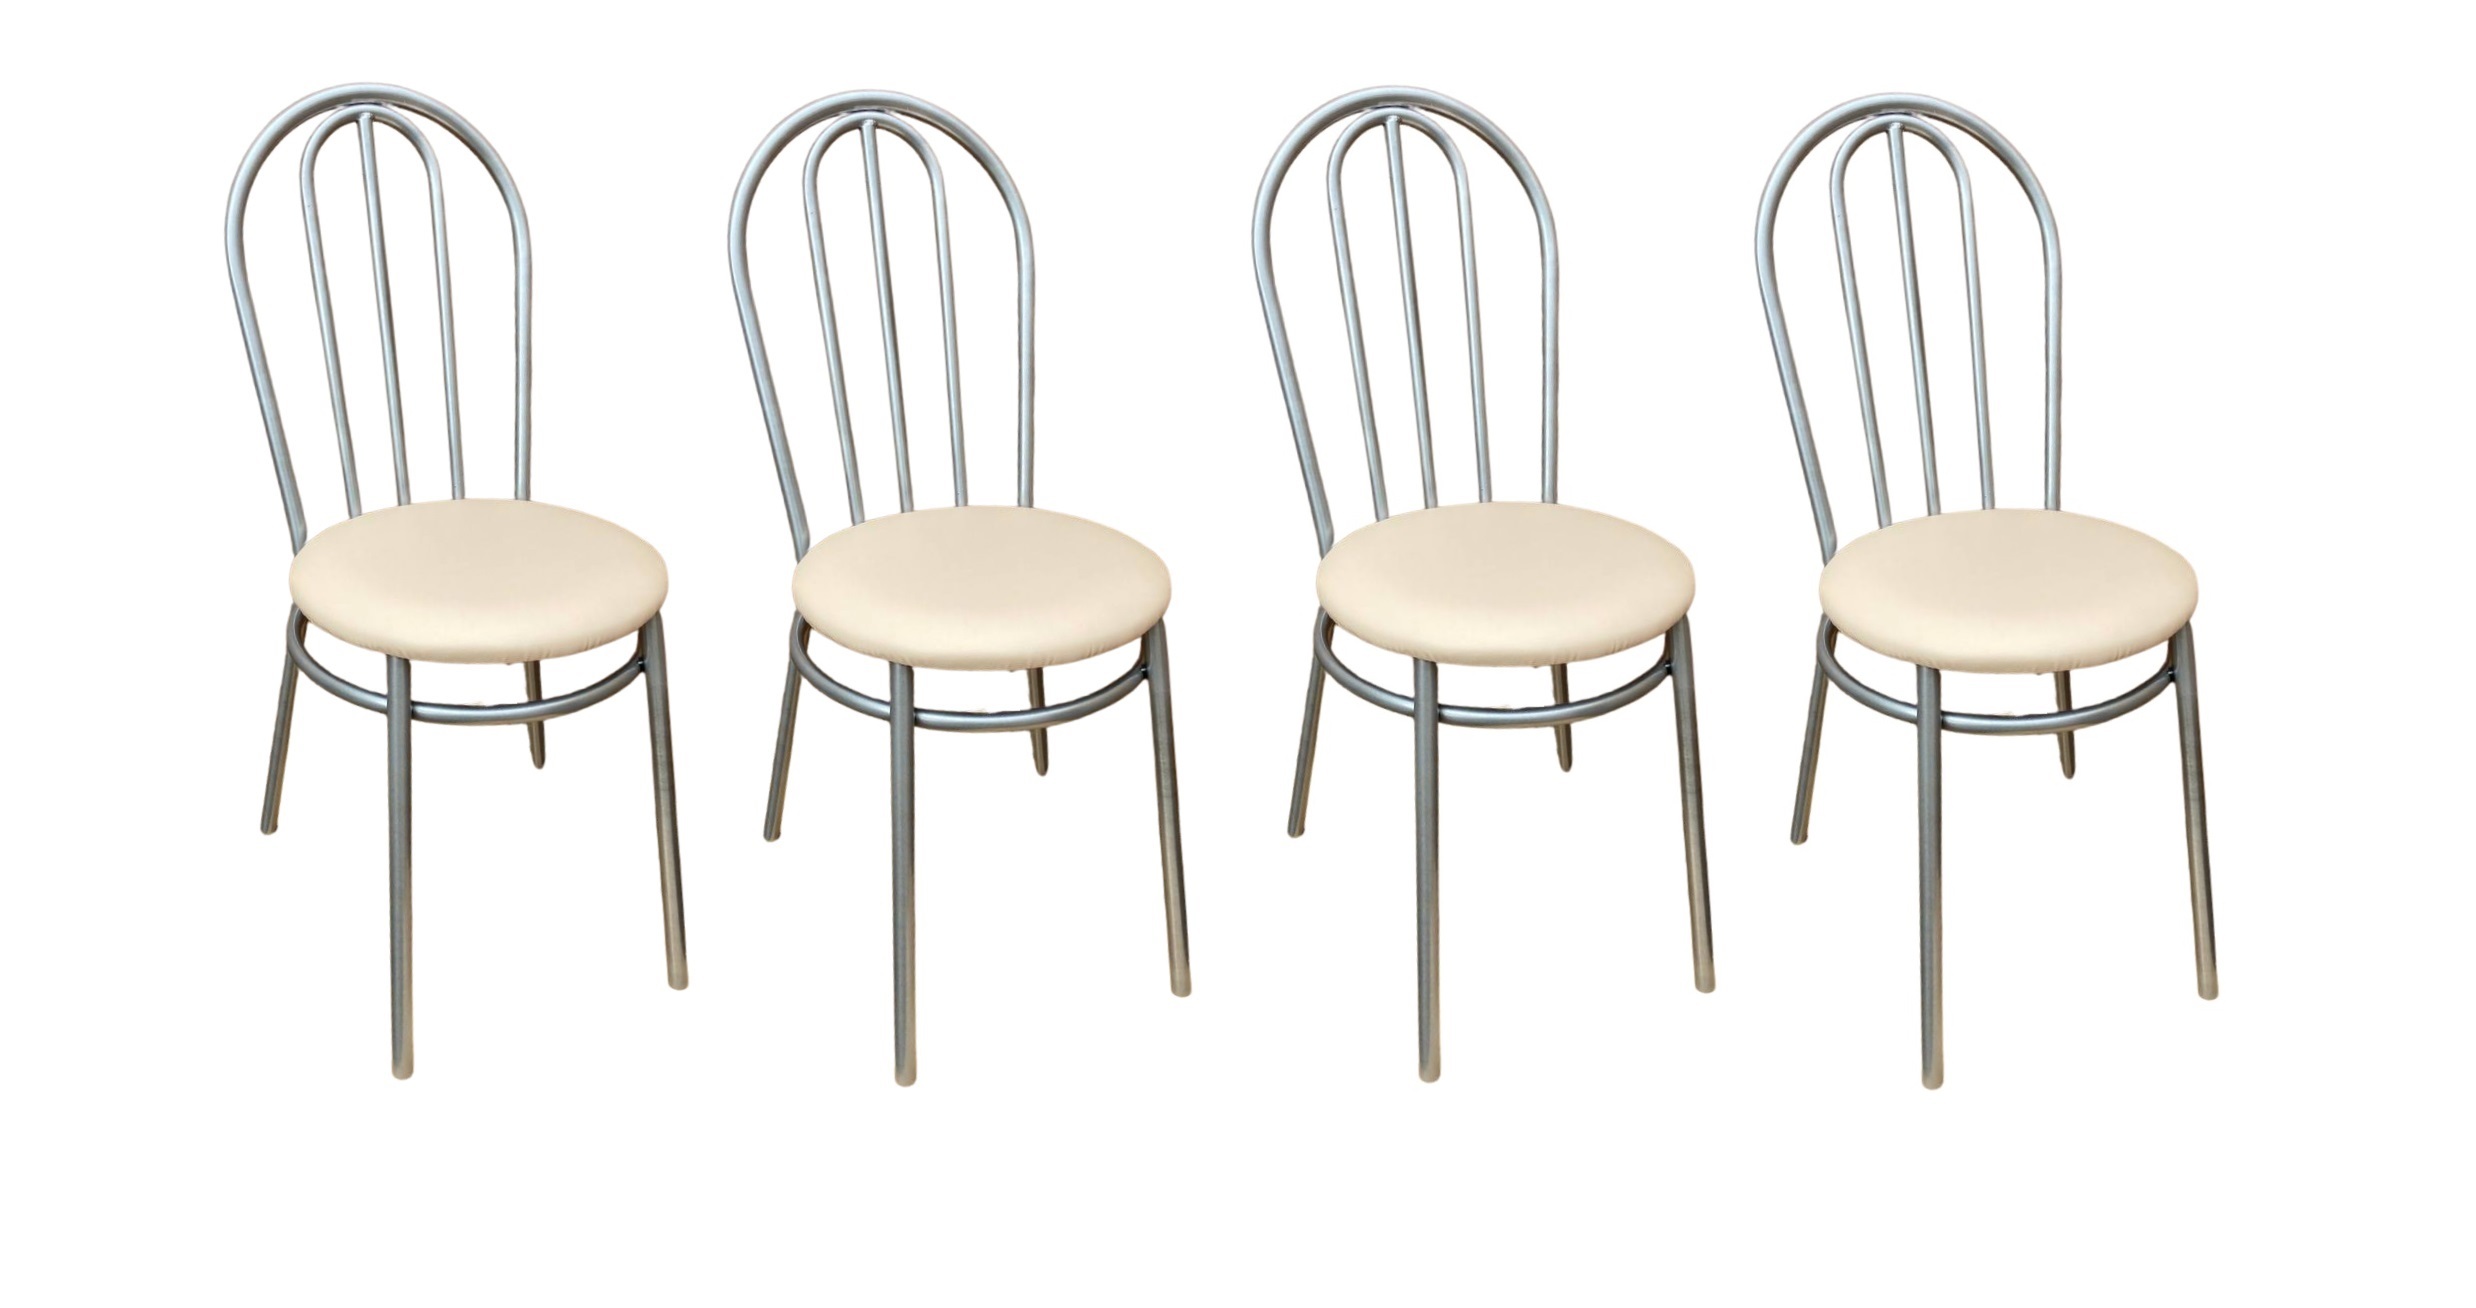 Комплект стульев 4 шт для кухни